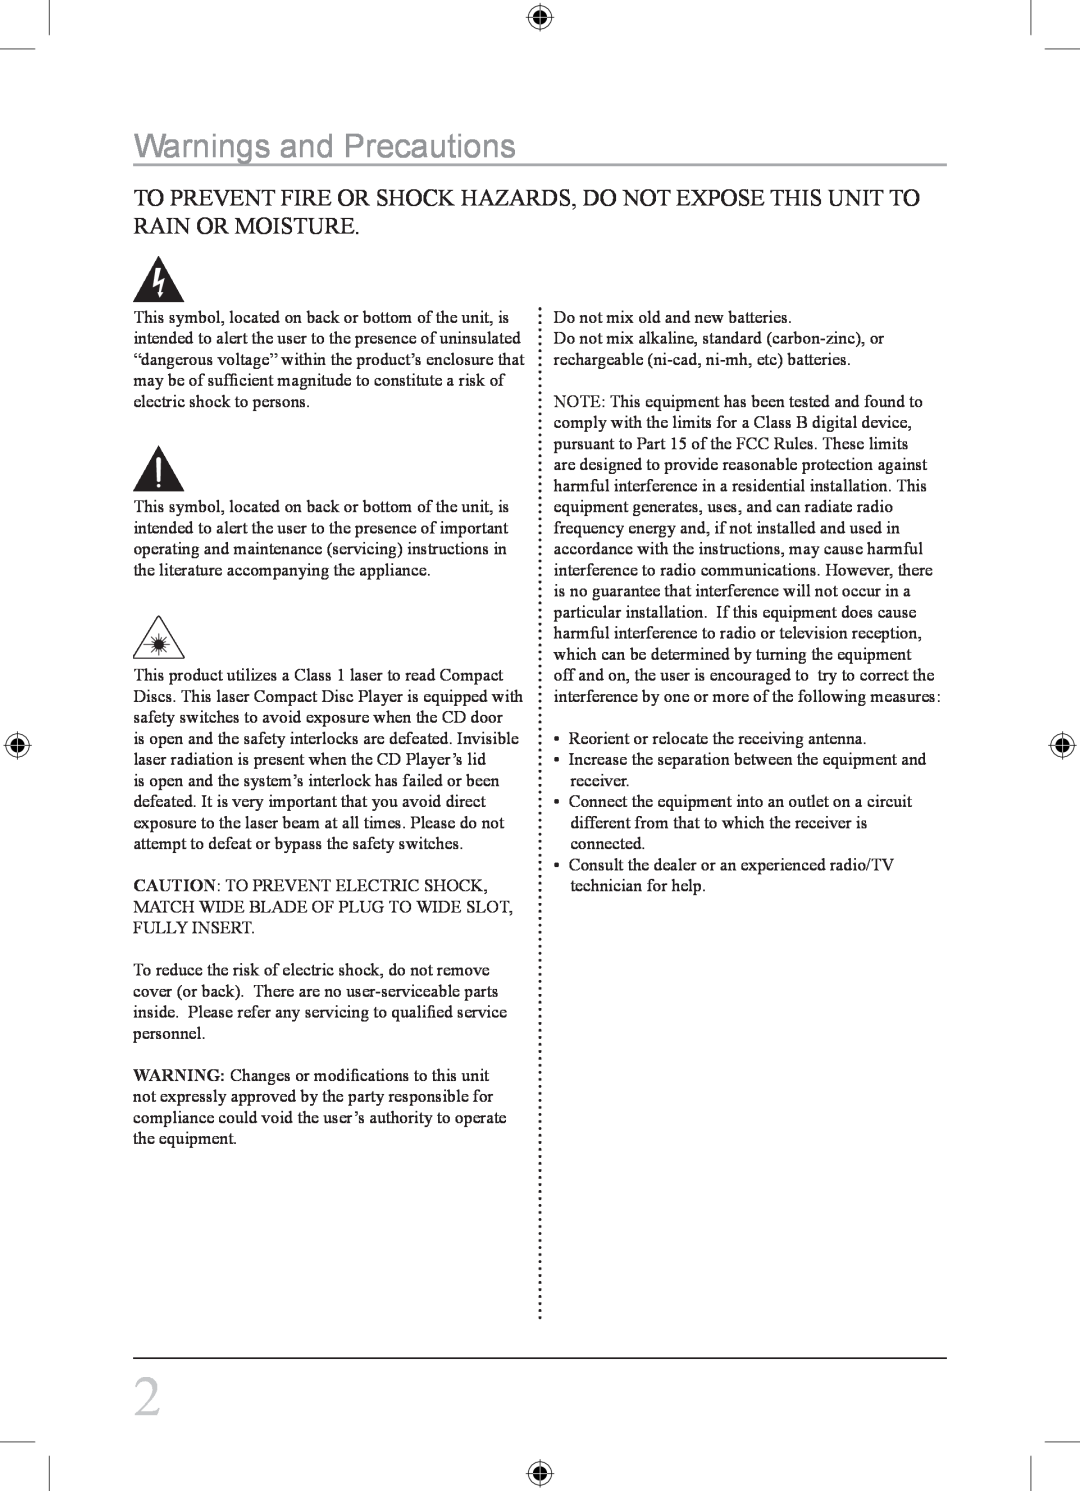 Sylvania SPA021 instruction manual Warnings and Precautions 